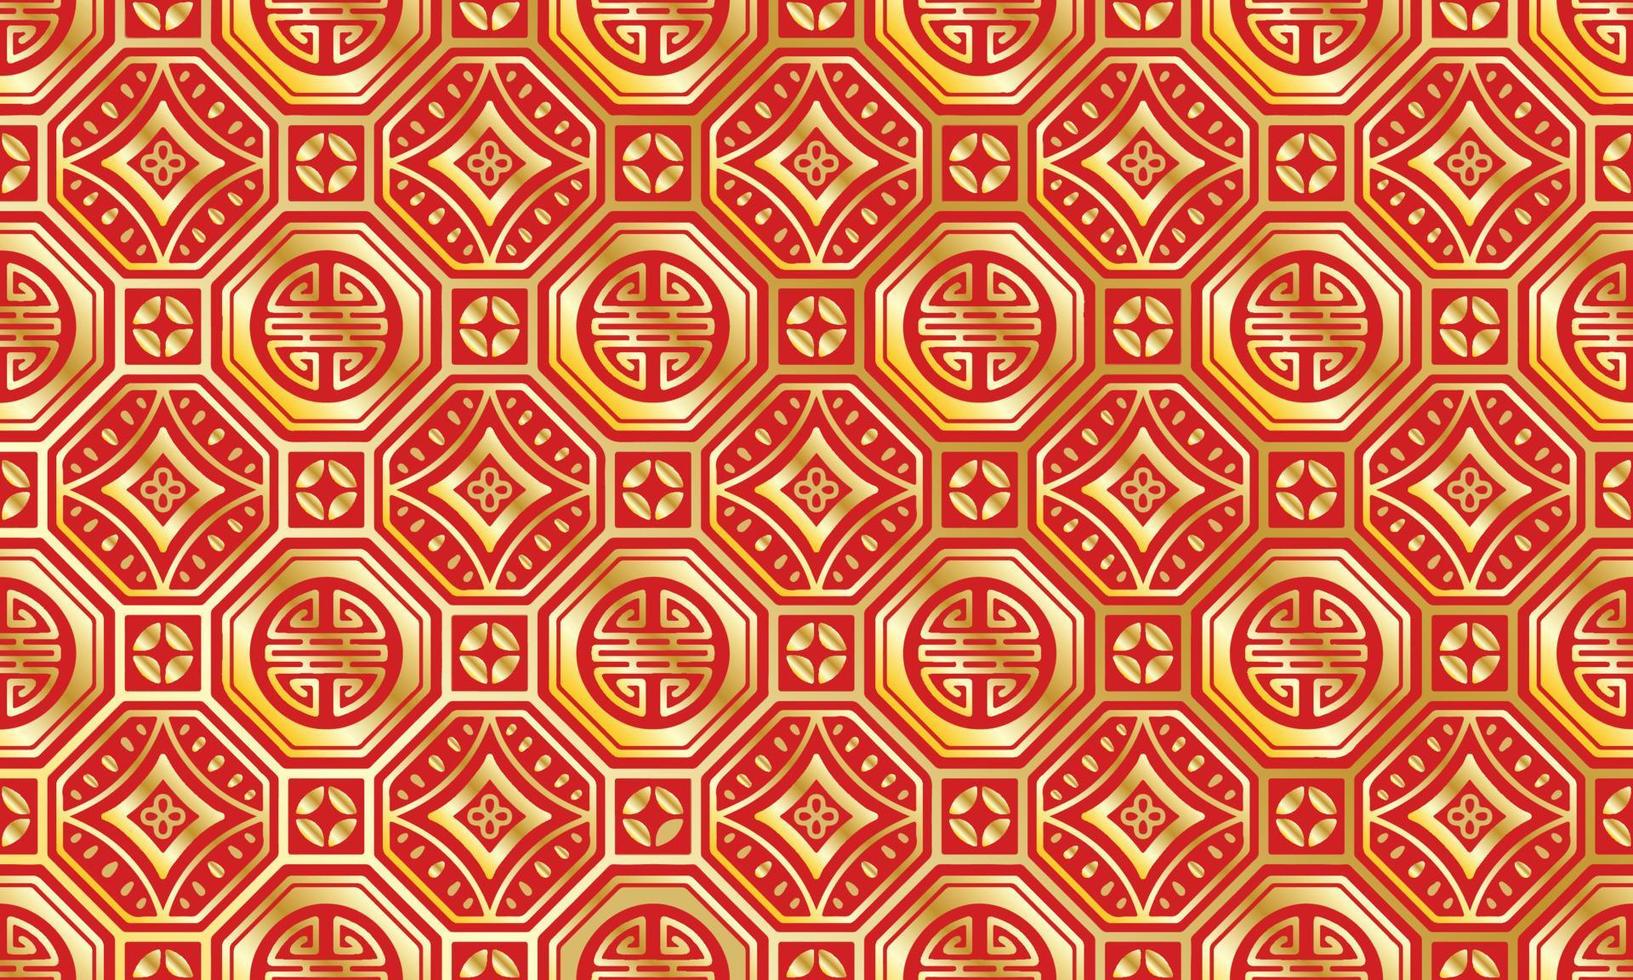 fundo abstrato tradicional chinês bonito vermelho ouro geométrico tribal ikat motivo popular design de padrão nativo oriental tapete papel de parede roupas tecido embrulho impressão vetor de tricô batik folk